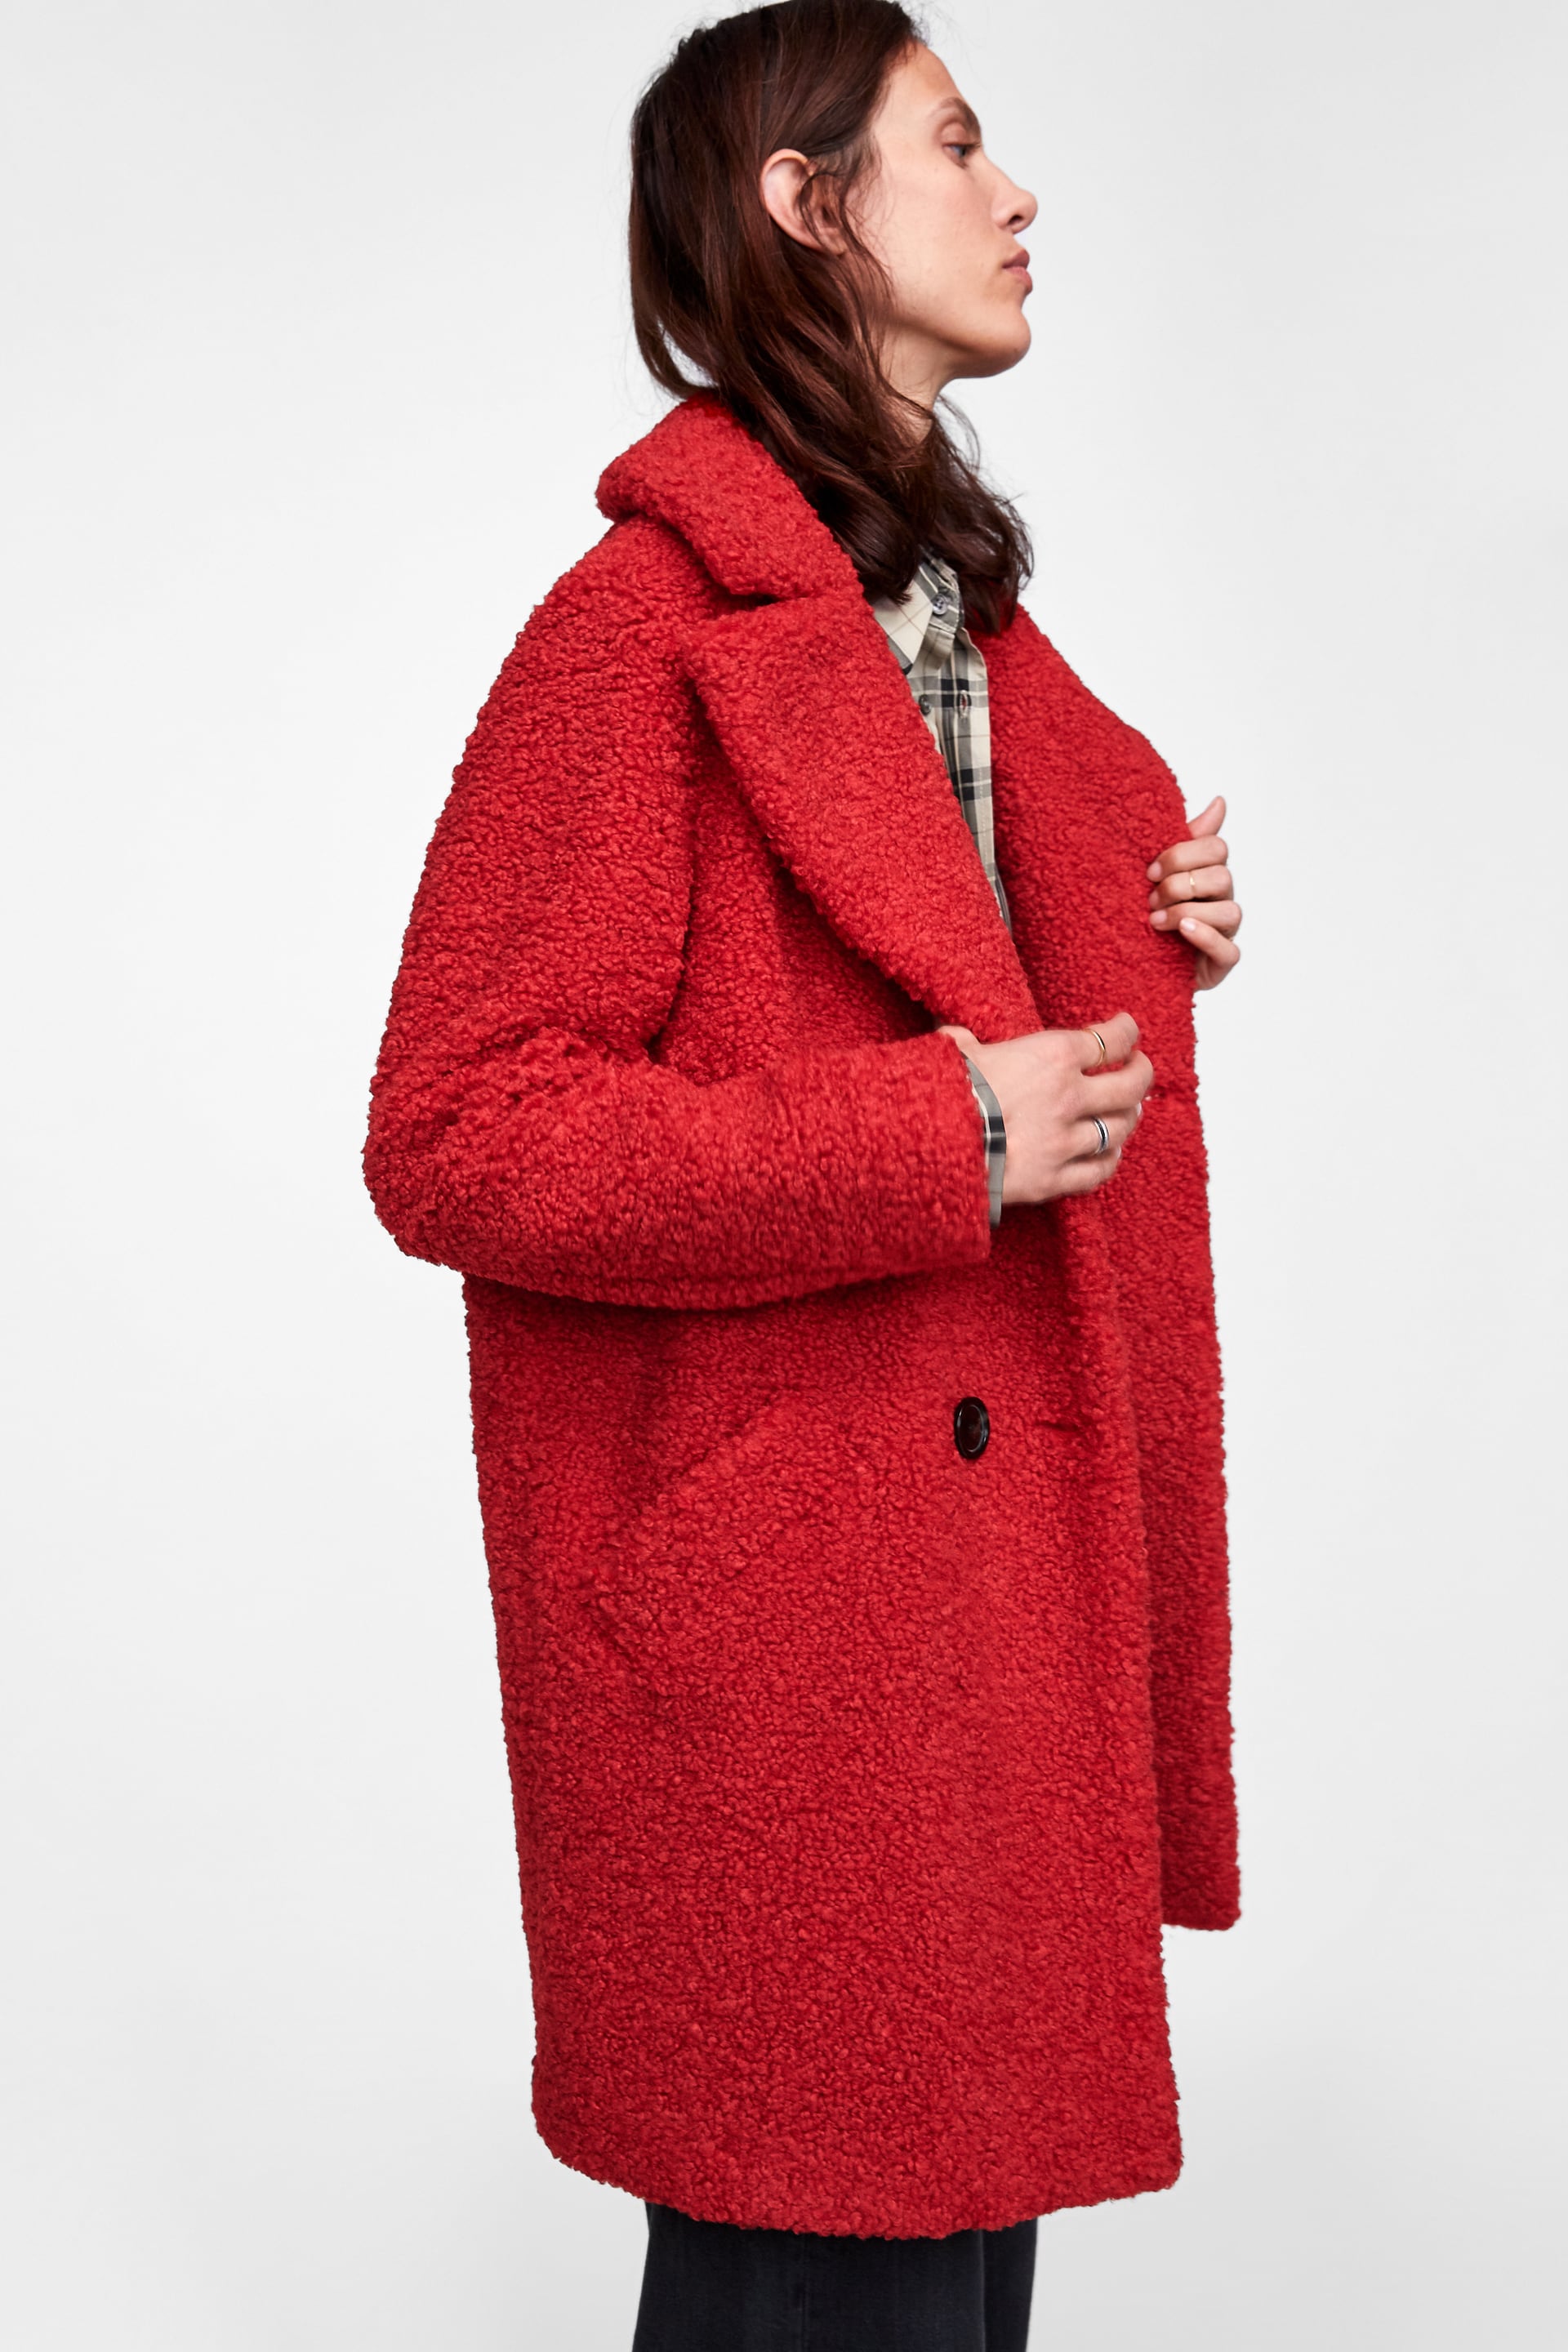 Cappotto teddy bear coat Zara rosso